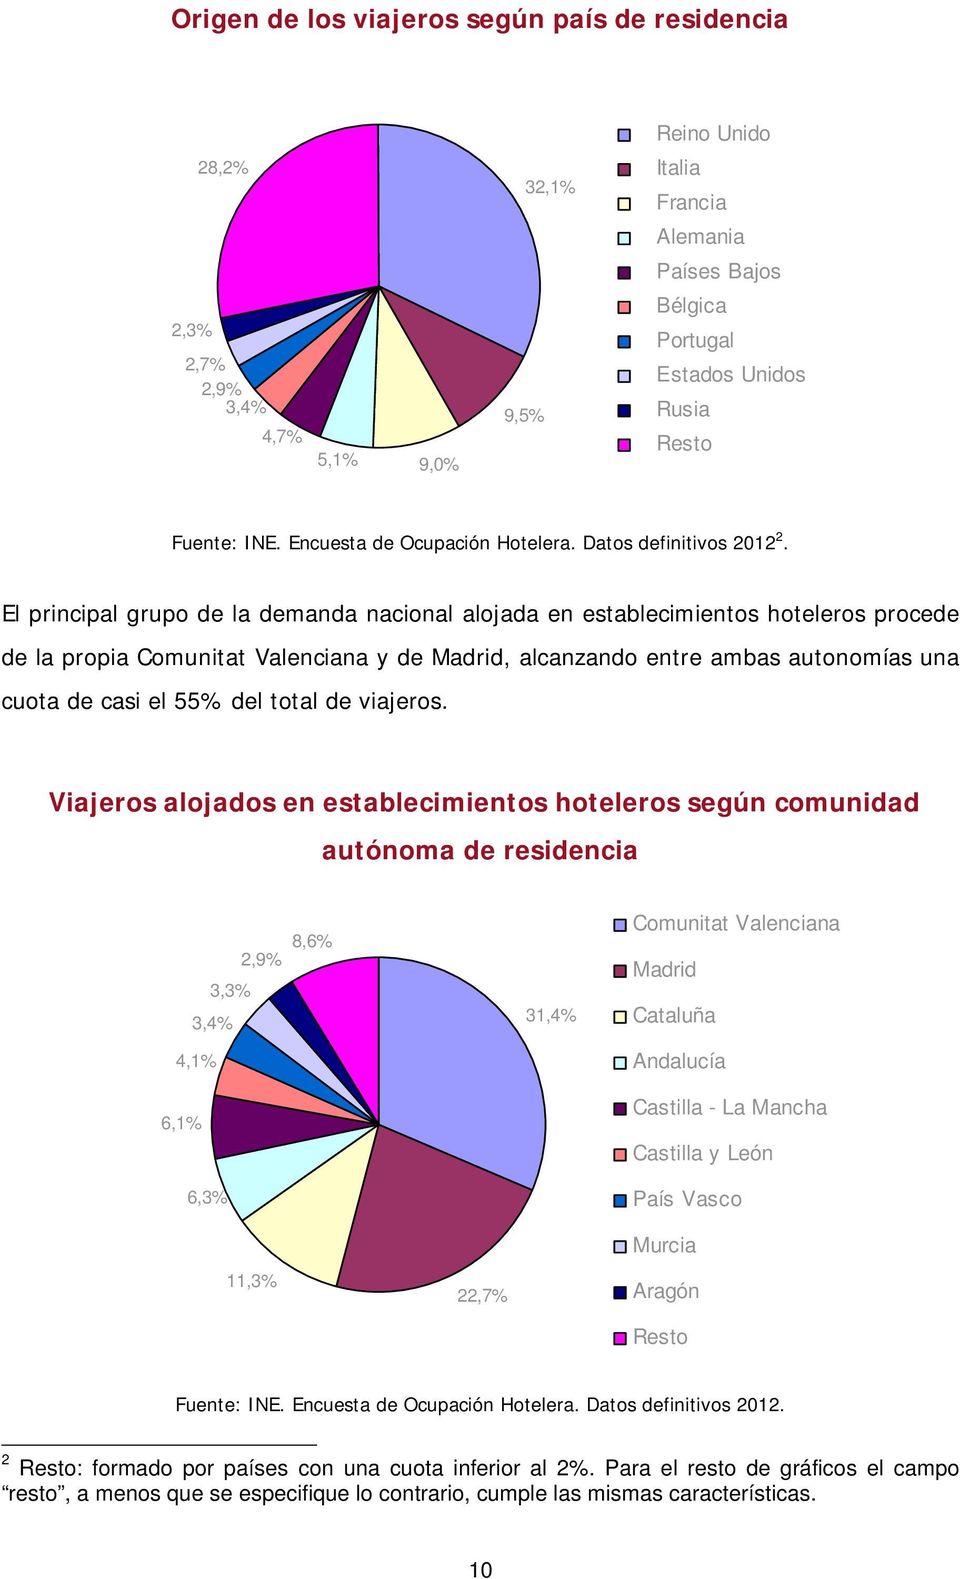 El principal grupo de la demanda nacional alojada en establecimientos hoteleros procede de la propia Comunitat Valenciana y de Madrid, alcanzando entre ambas autonomías una cuota de casi el 55% del